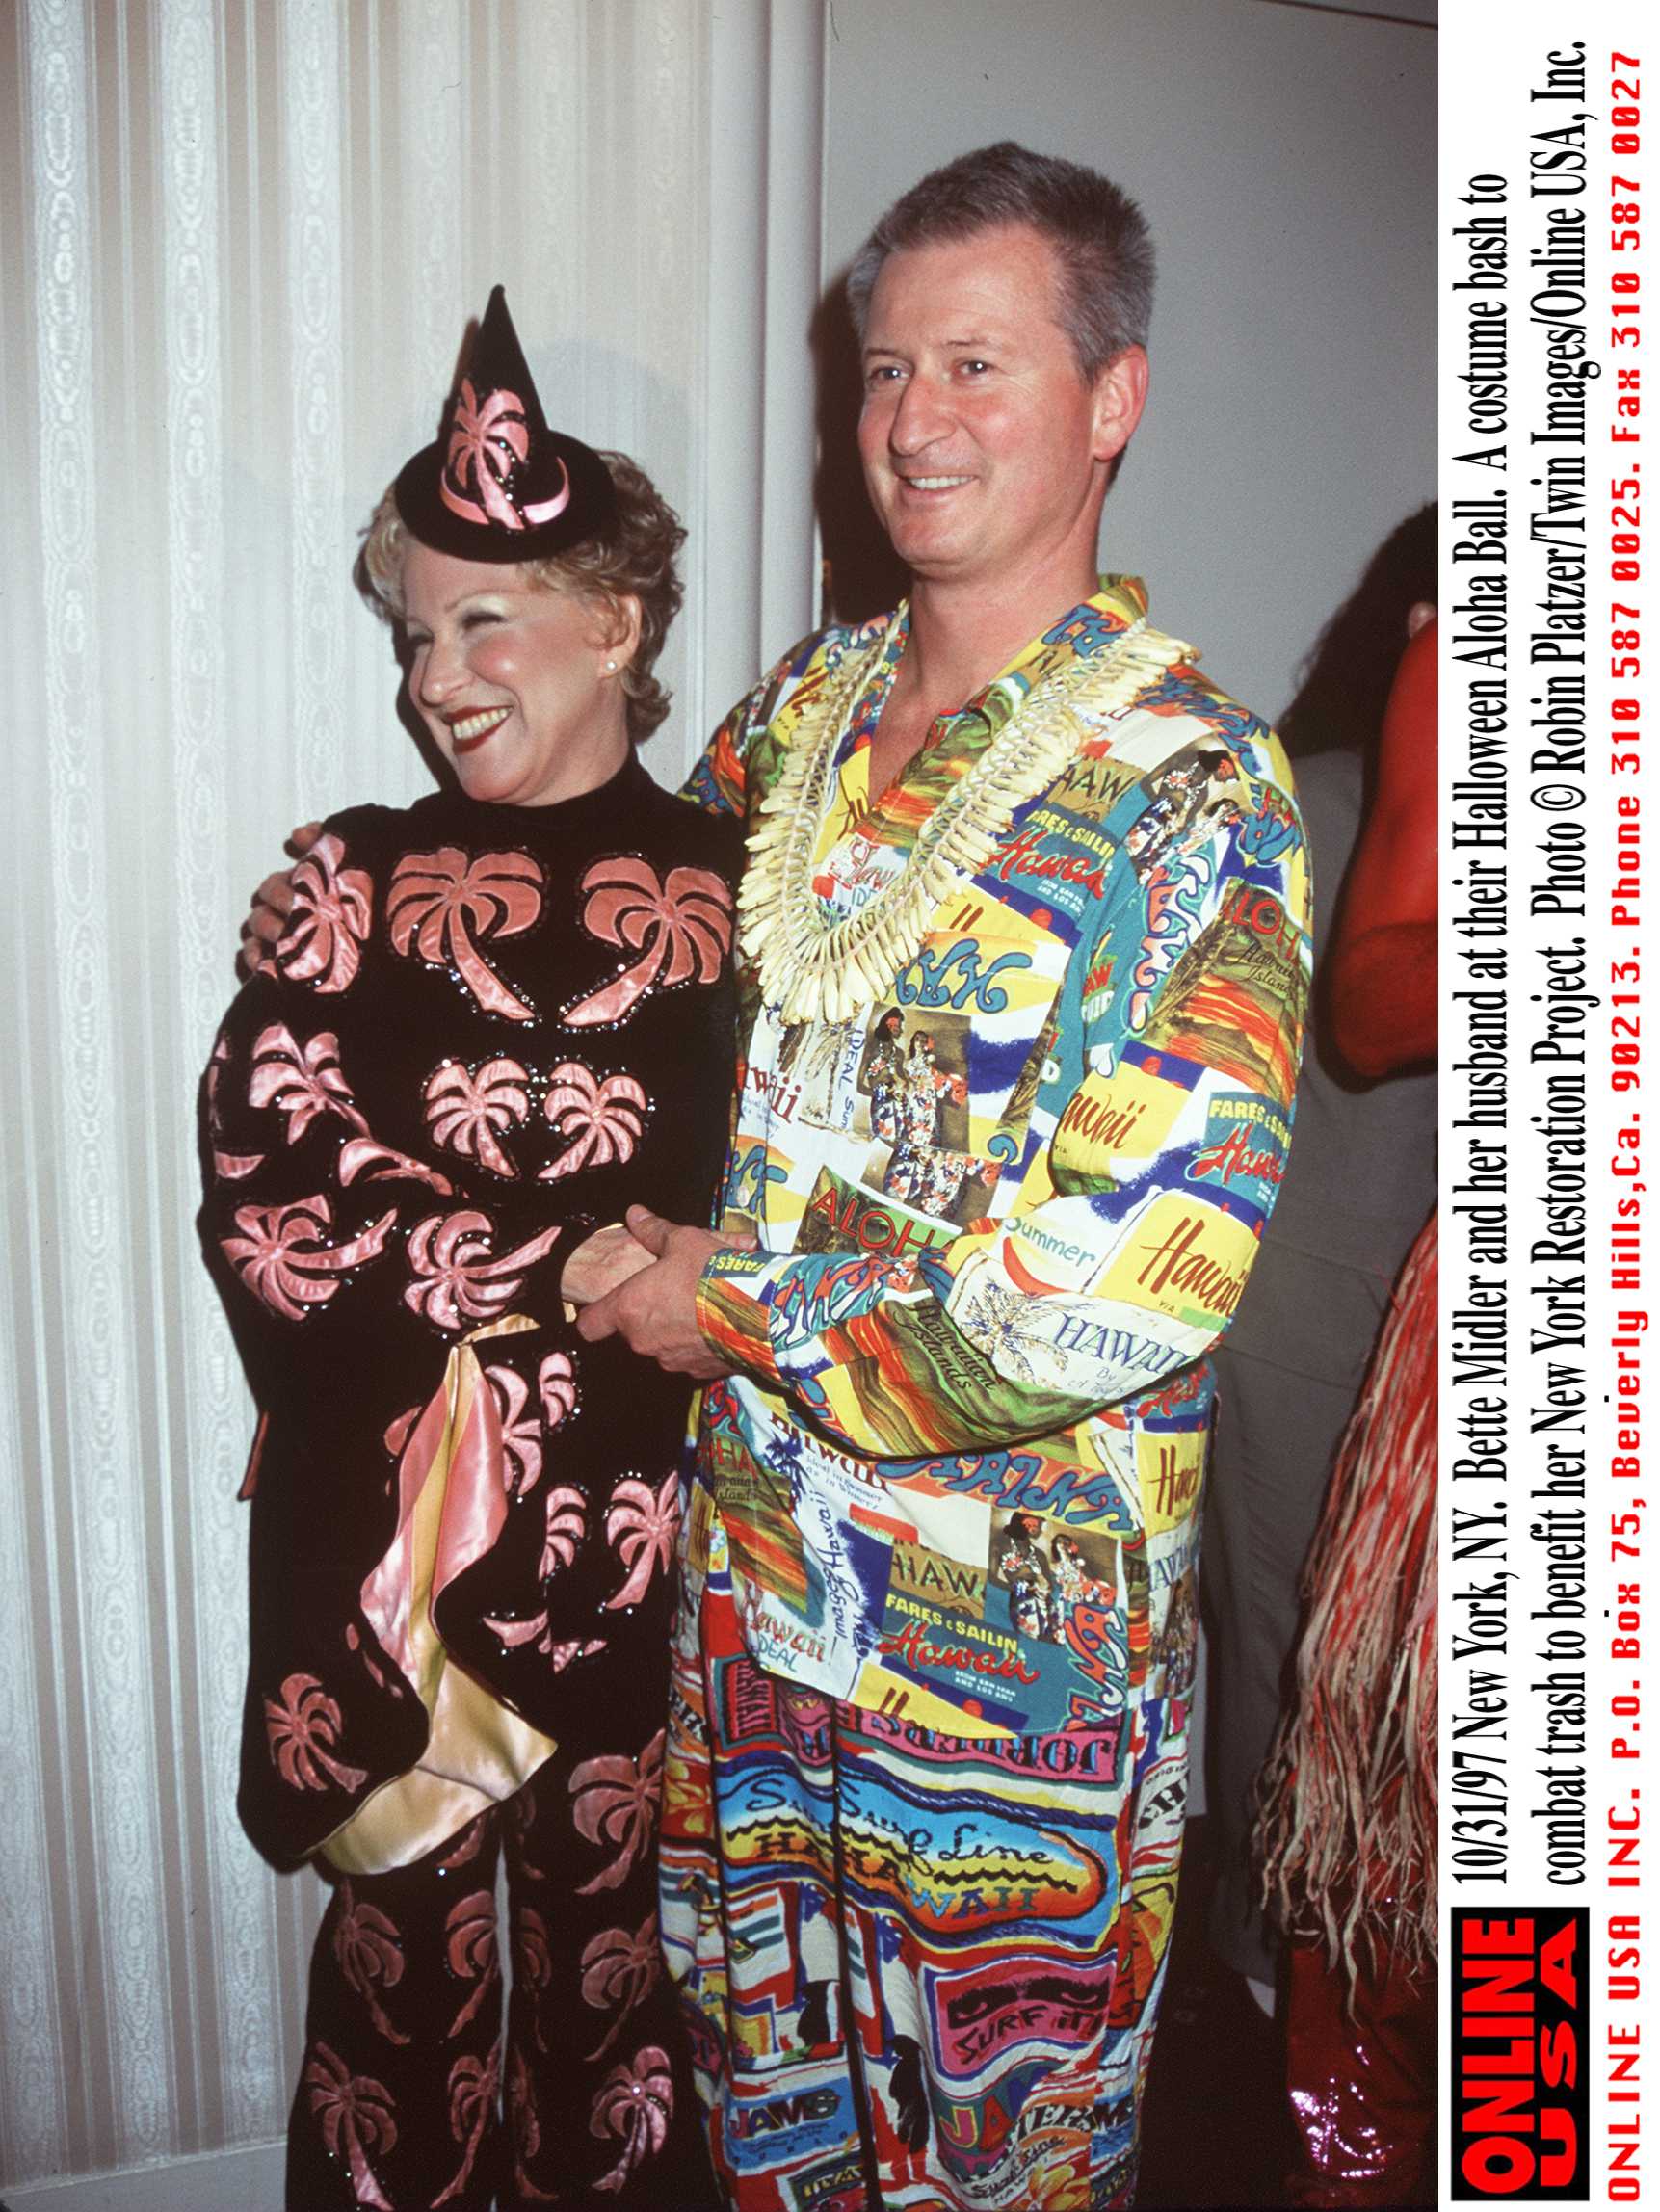 La chanteuse Bette Midler et son mari Martin von Haselberg lors de leur Halloween Aloha Ball en octobre 1997 | Source : Getty Images